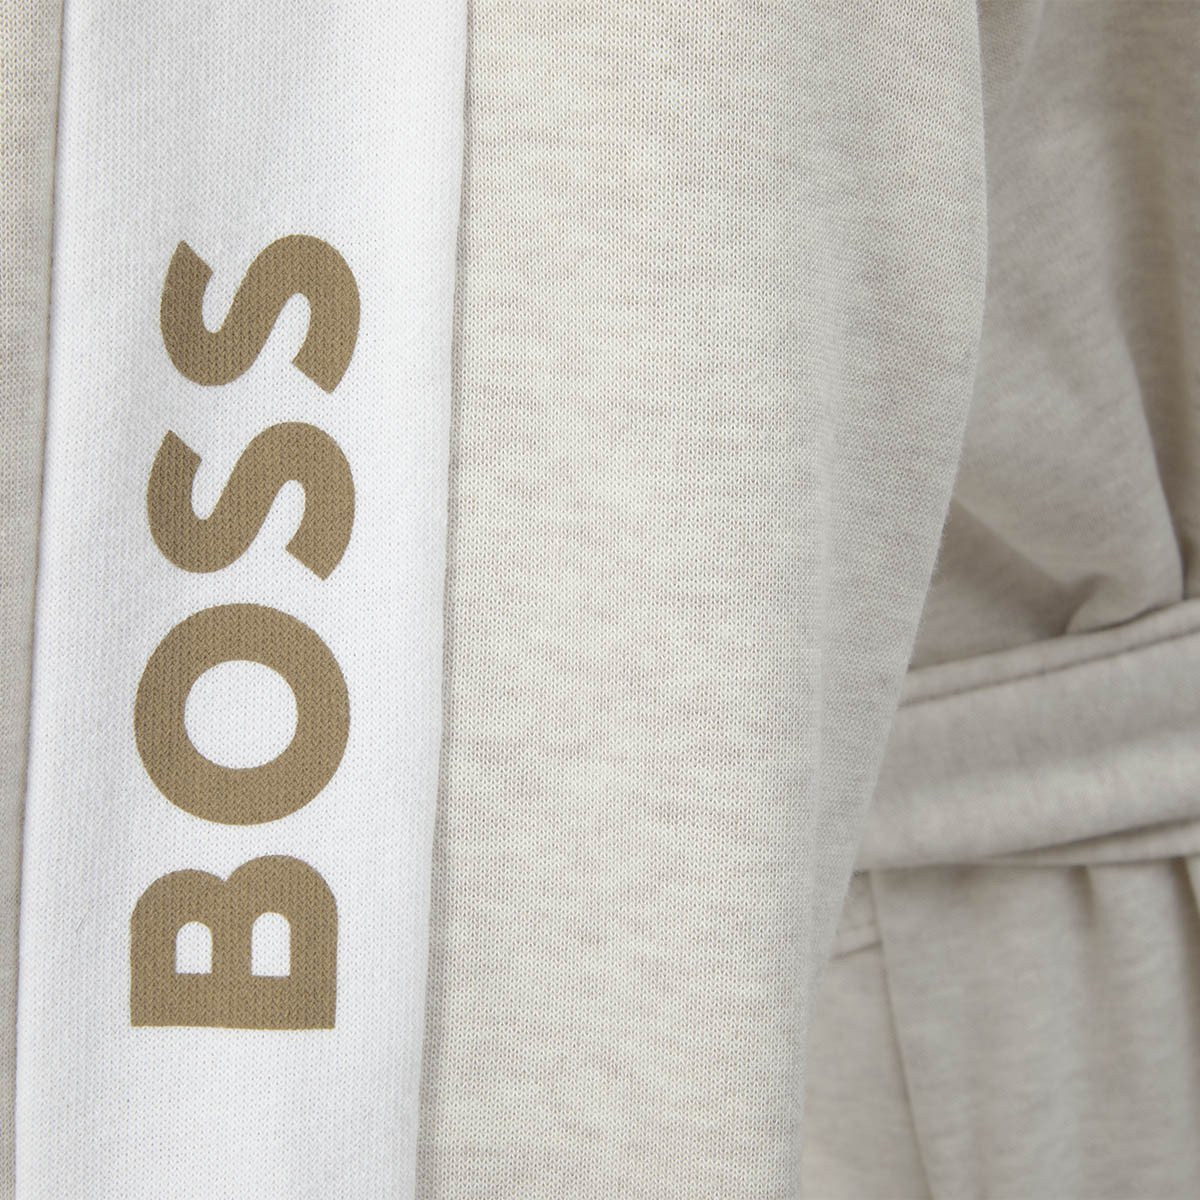 халат с капюшоном Hugo Boss Sense - купить в магазине Yves Delorme Russia